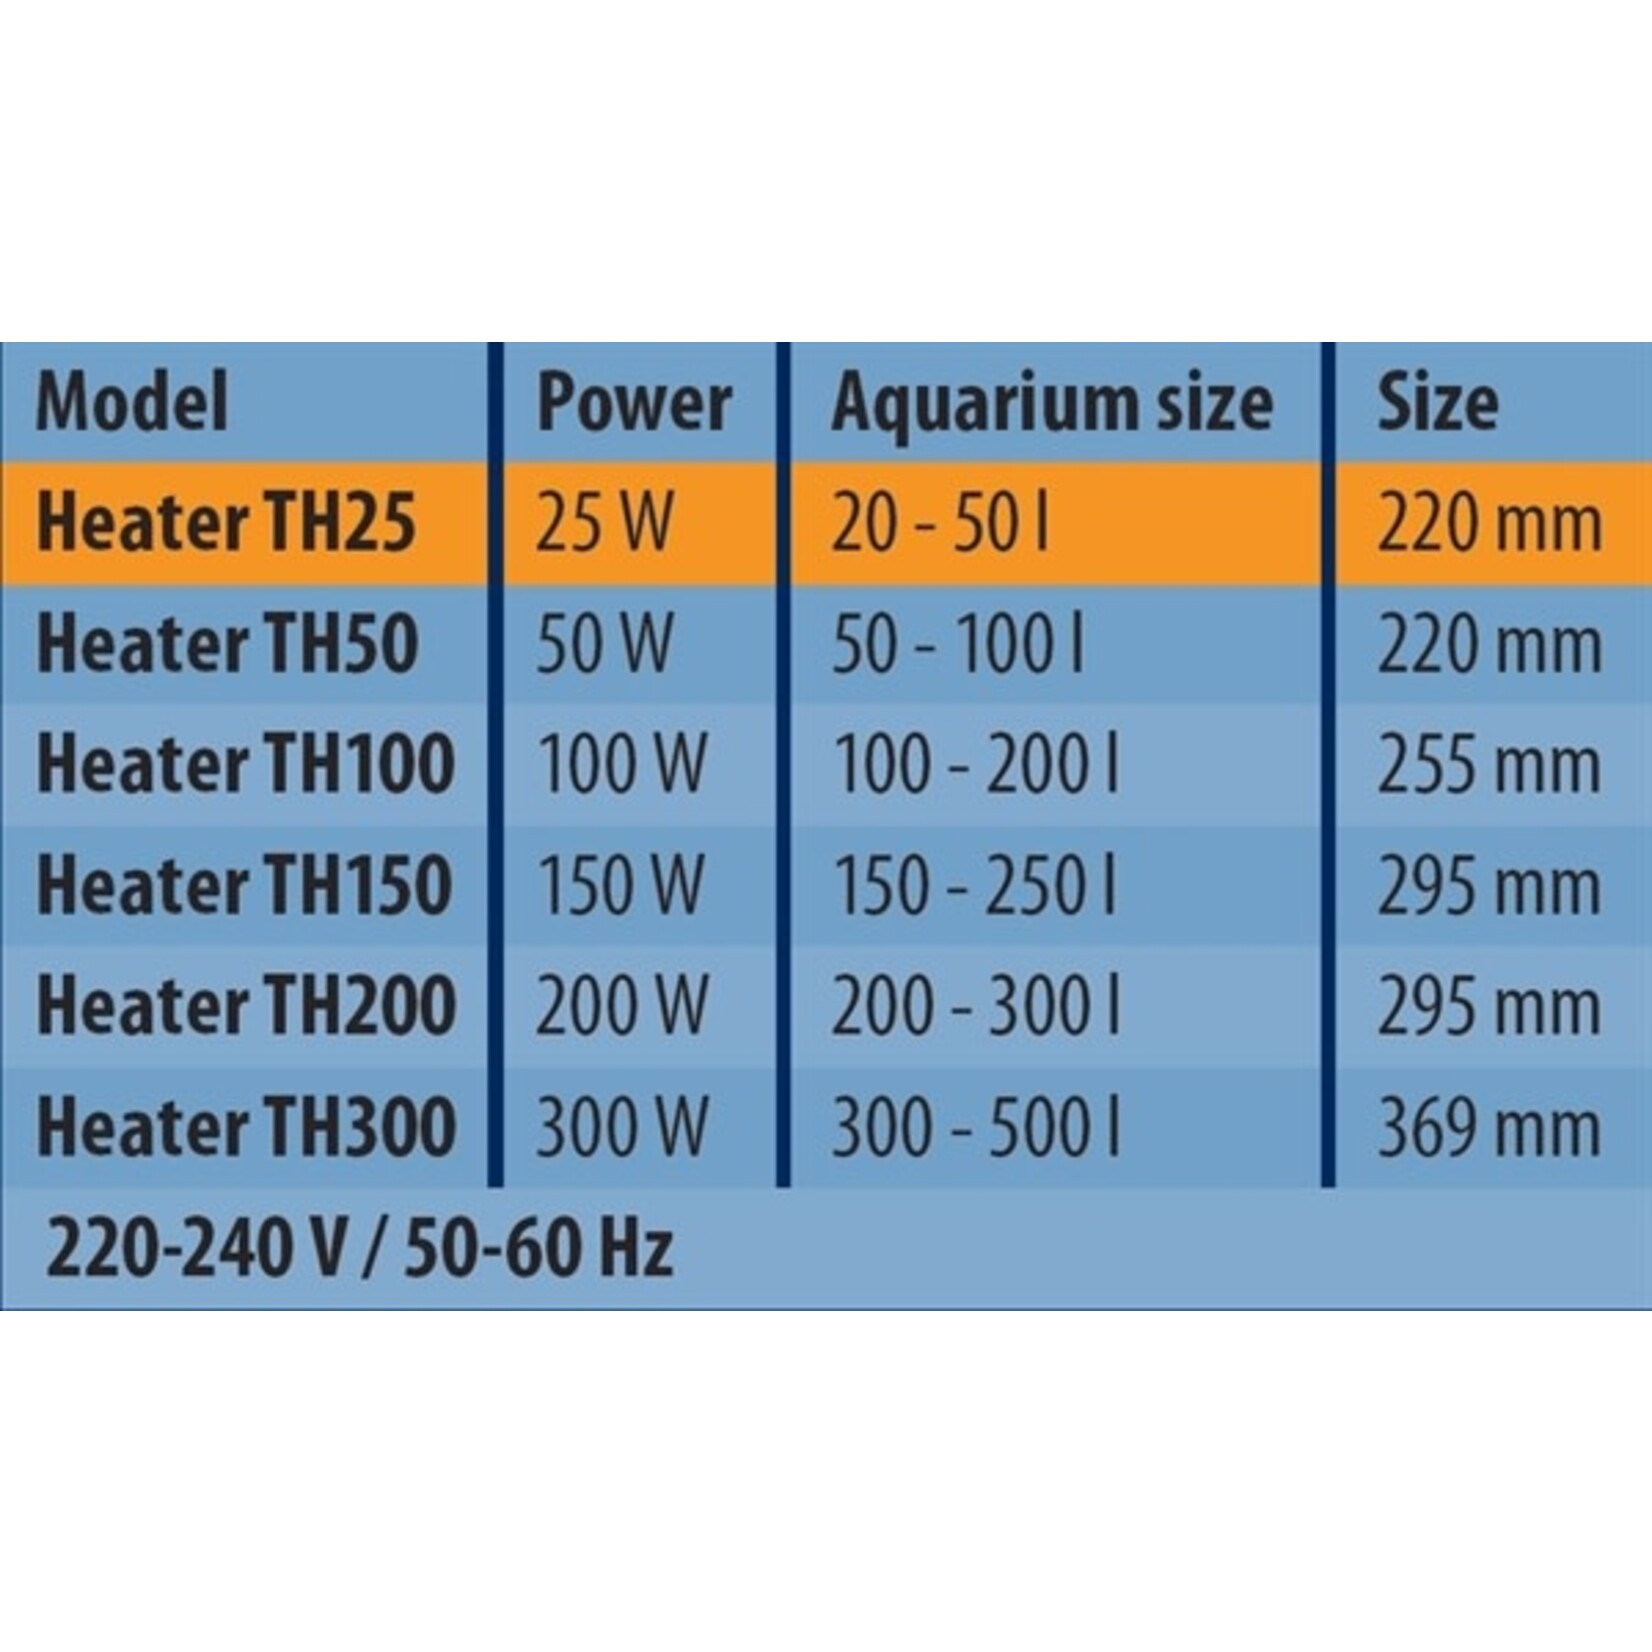 HS Aqua Glass aquarium heater & protector th-200